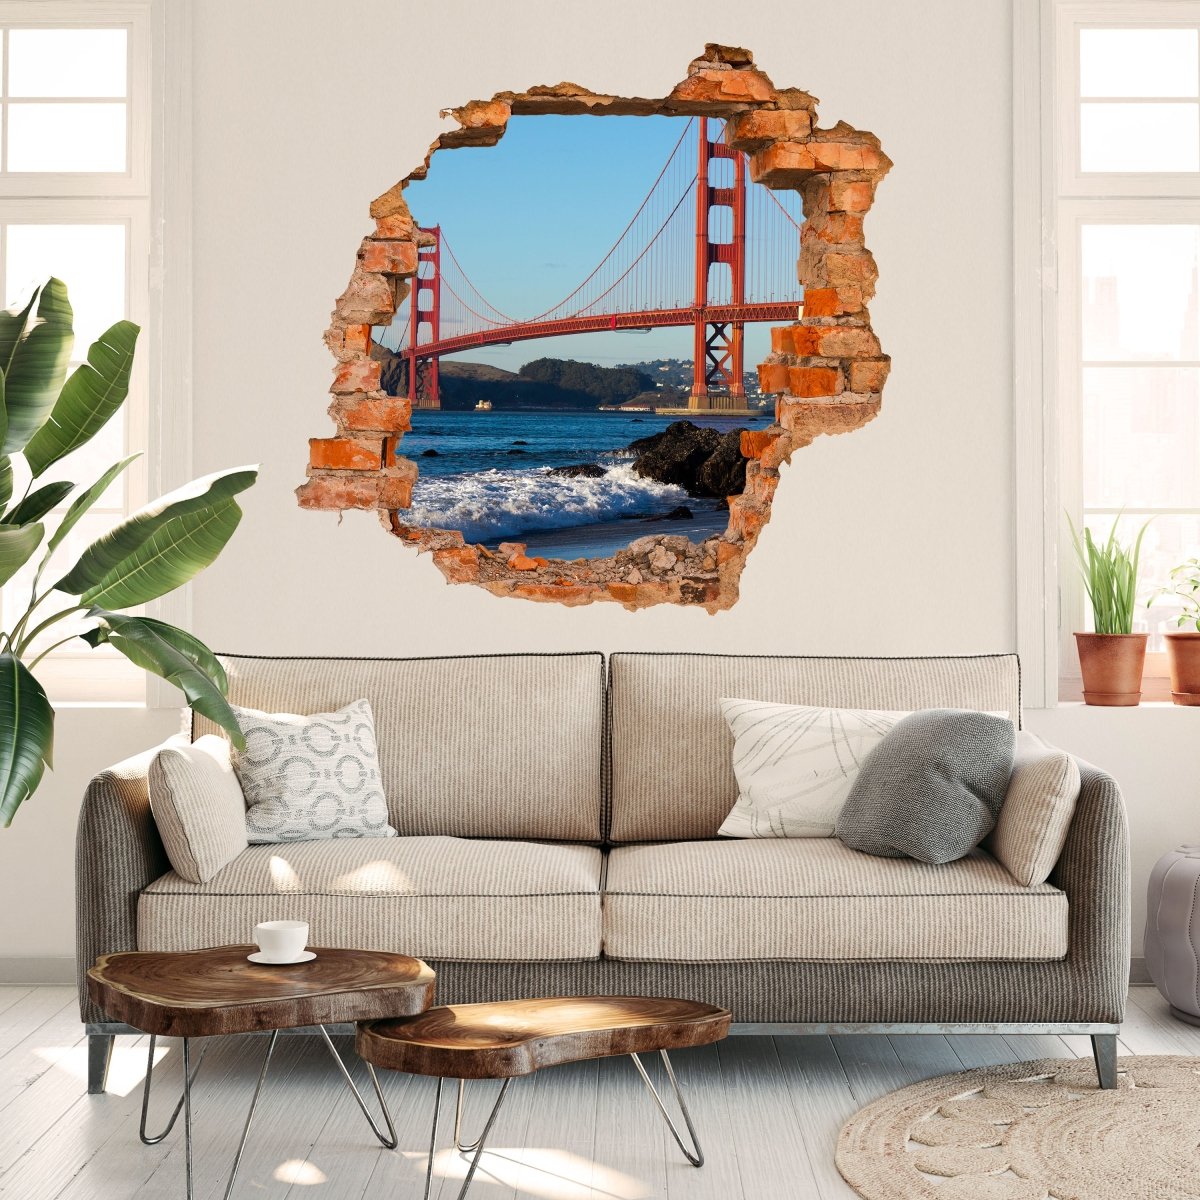 3D Wall Sticker Golden Gate Bridge - Wall Decal M0805